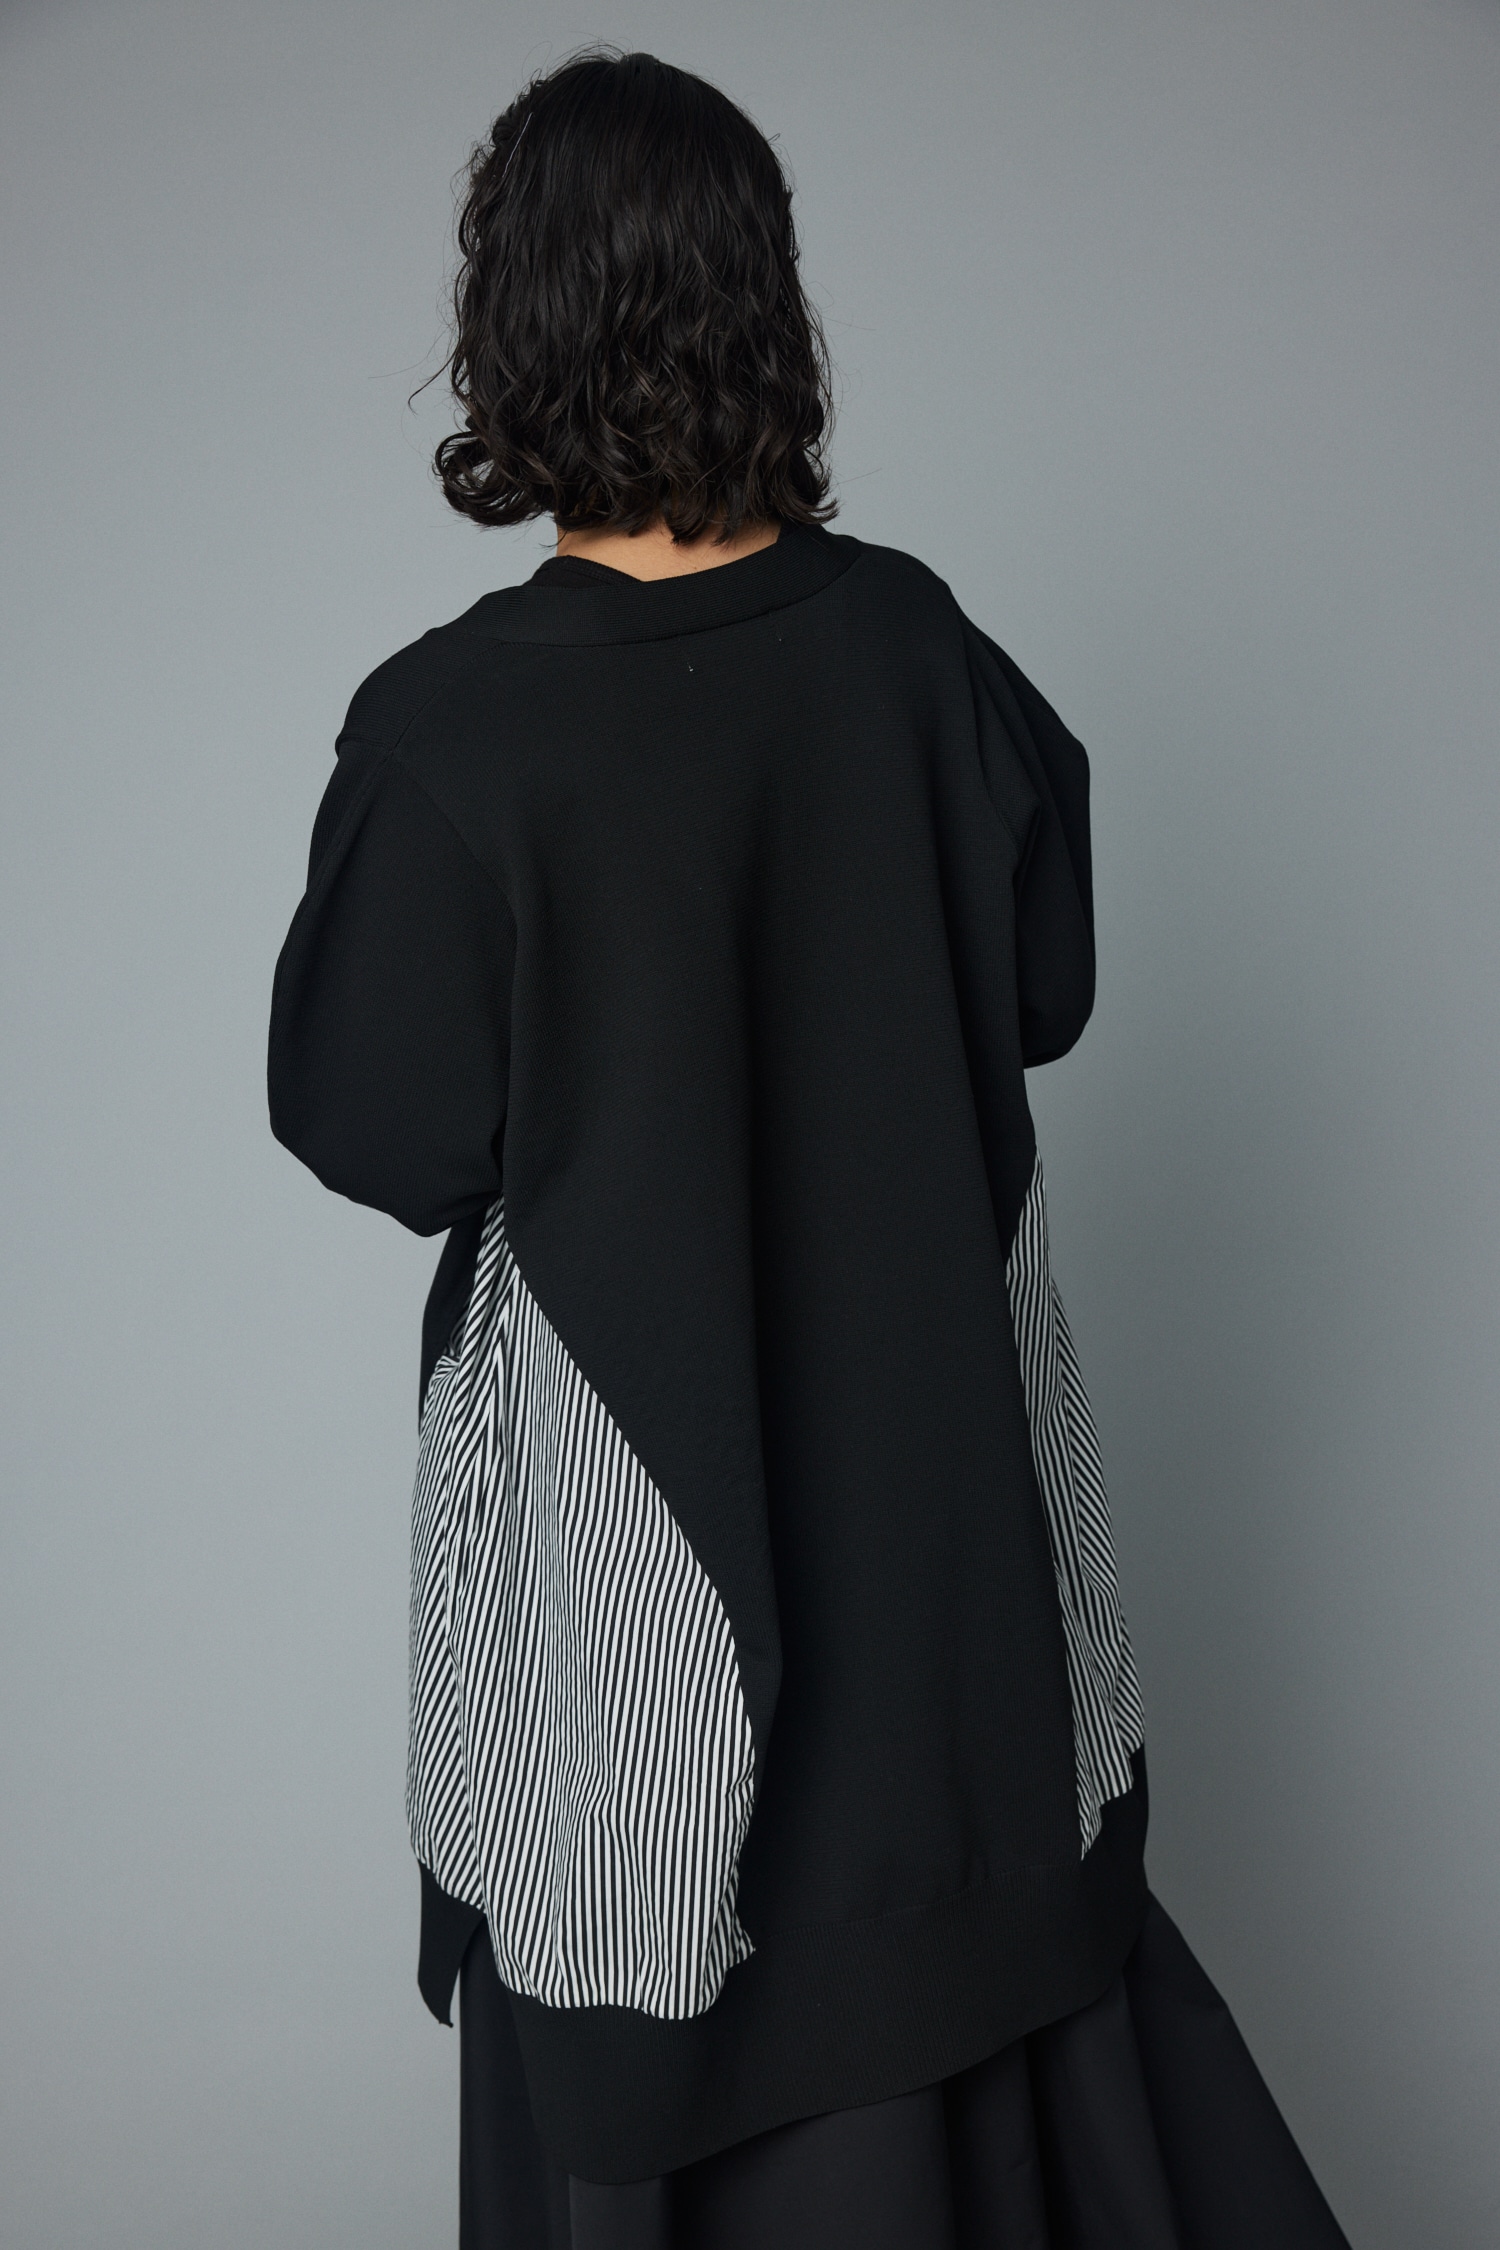 HeRIN.CYE | Wave sleeve long cardigan (ニット ) |SHEL'TTER WEBSTORE